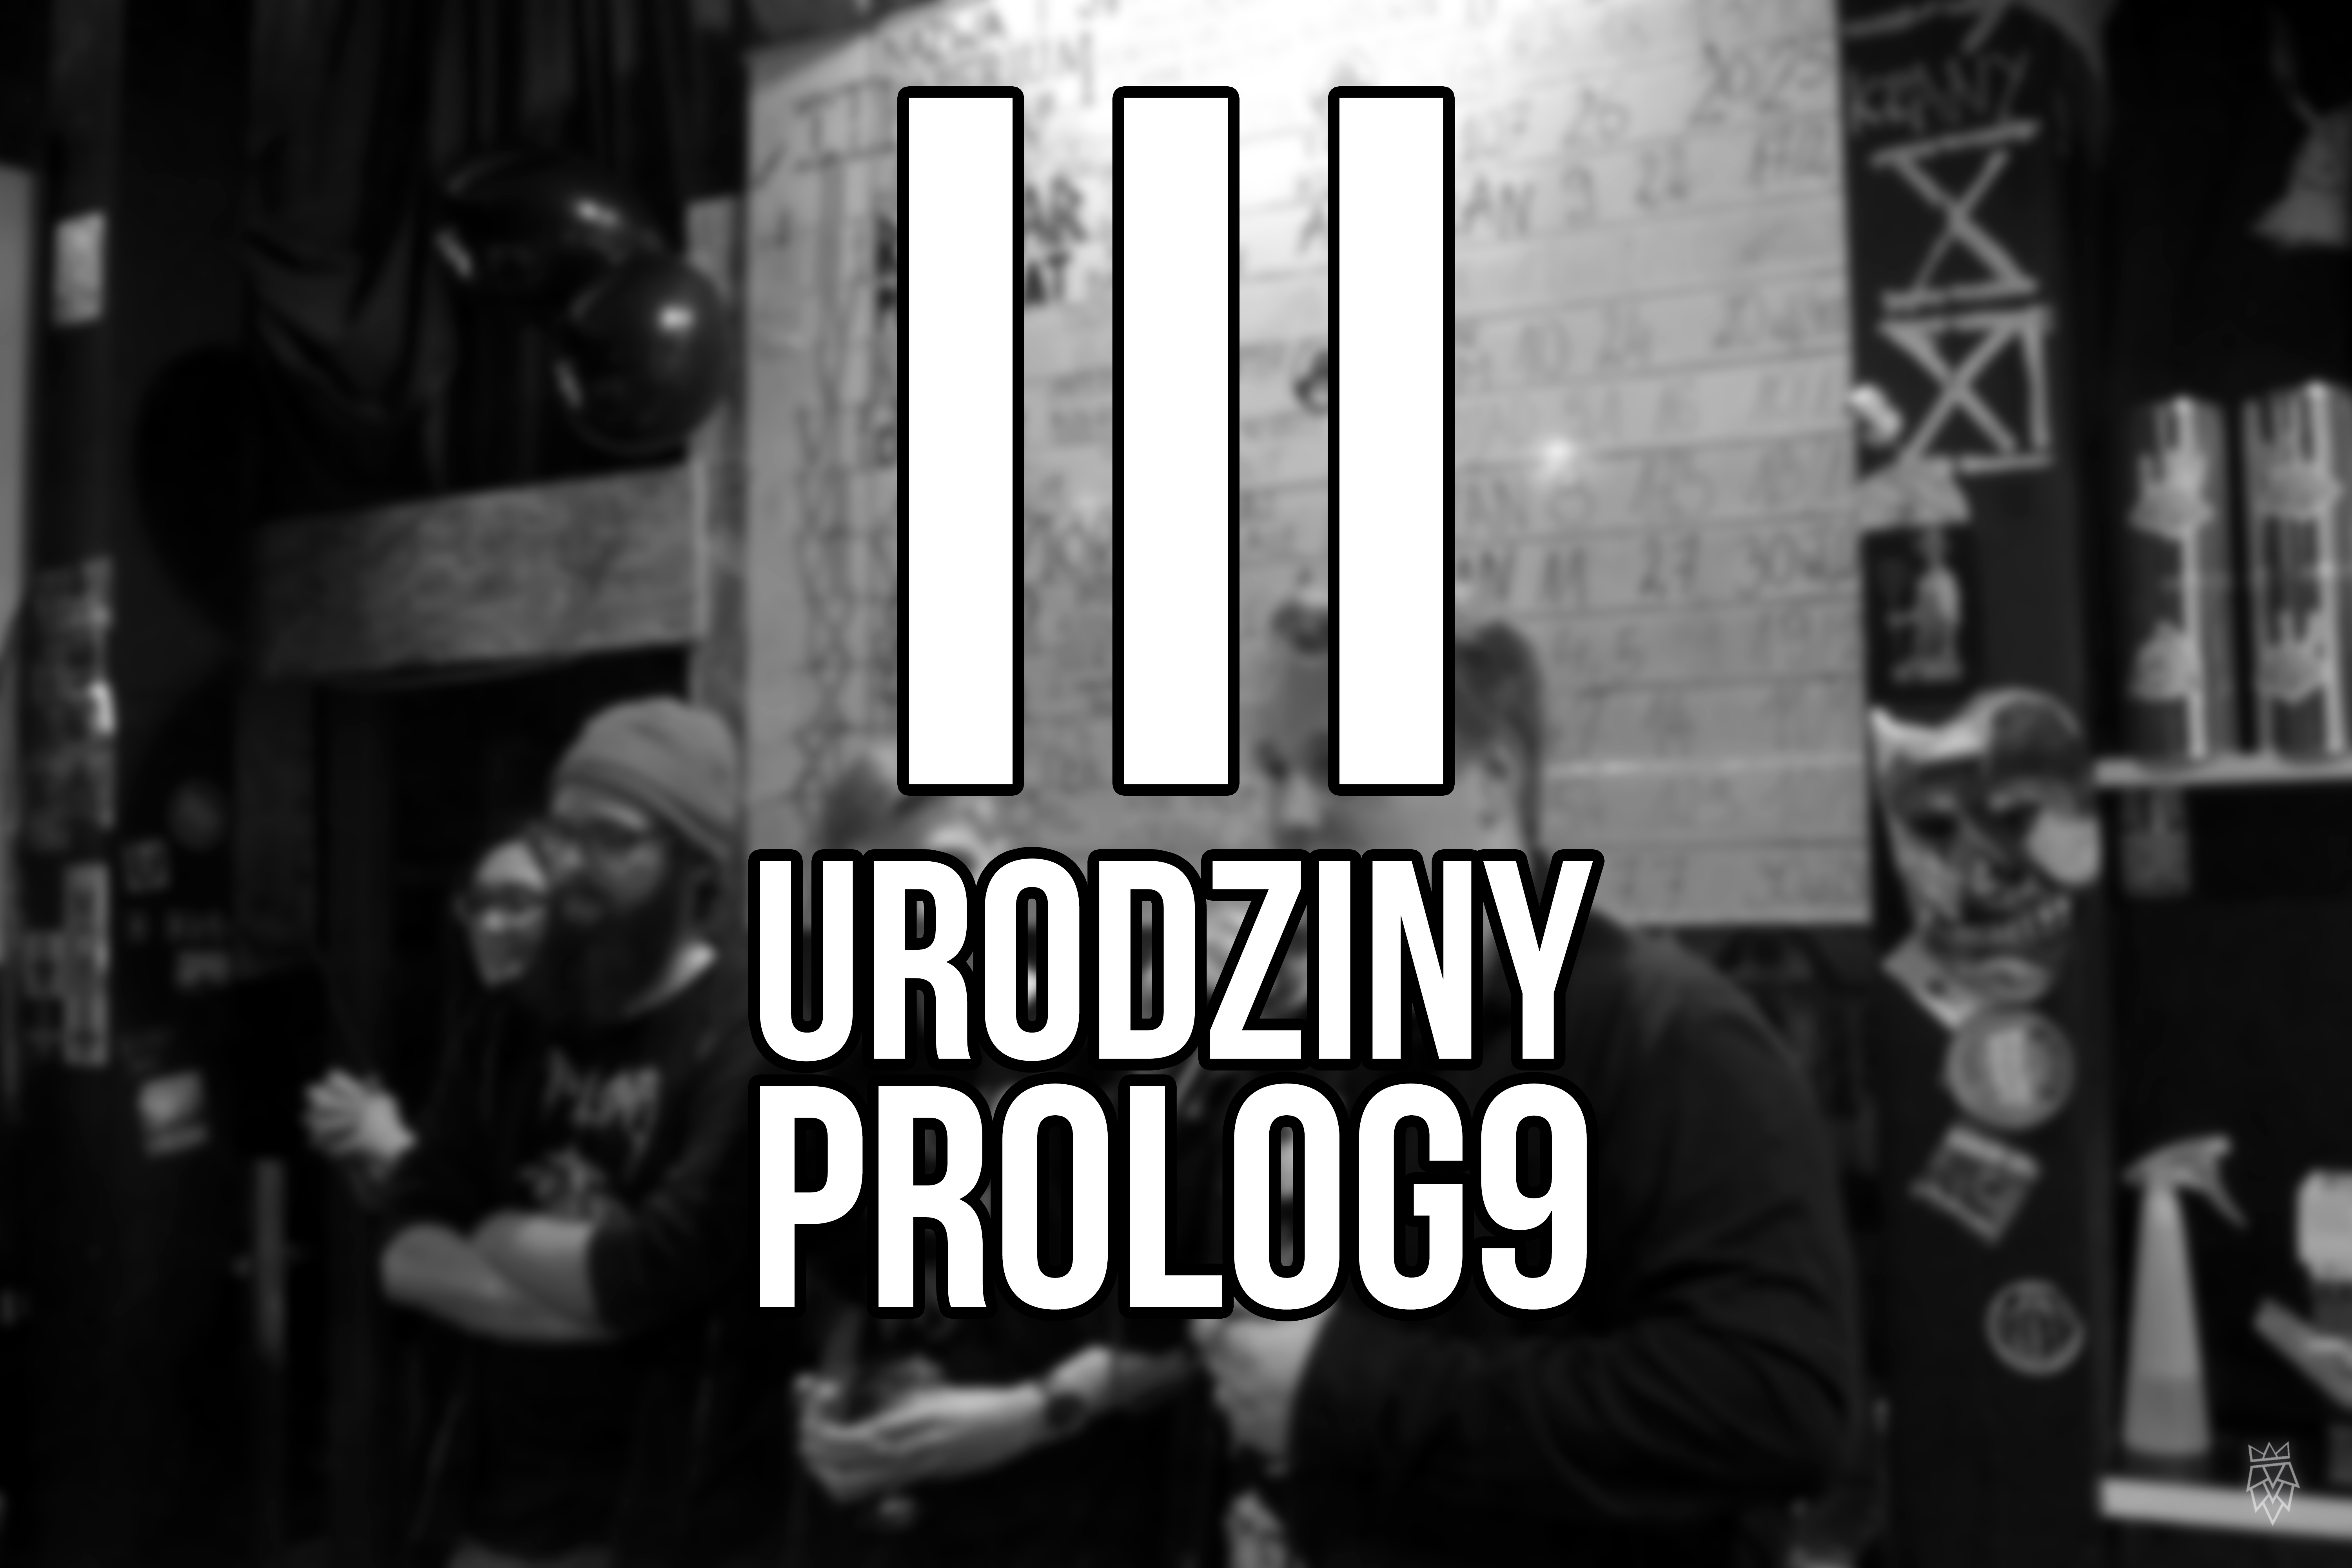 II urodziny Prolog9